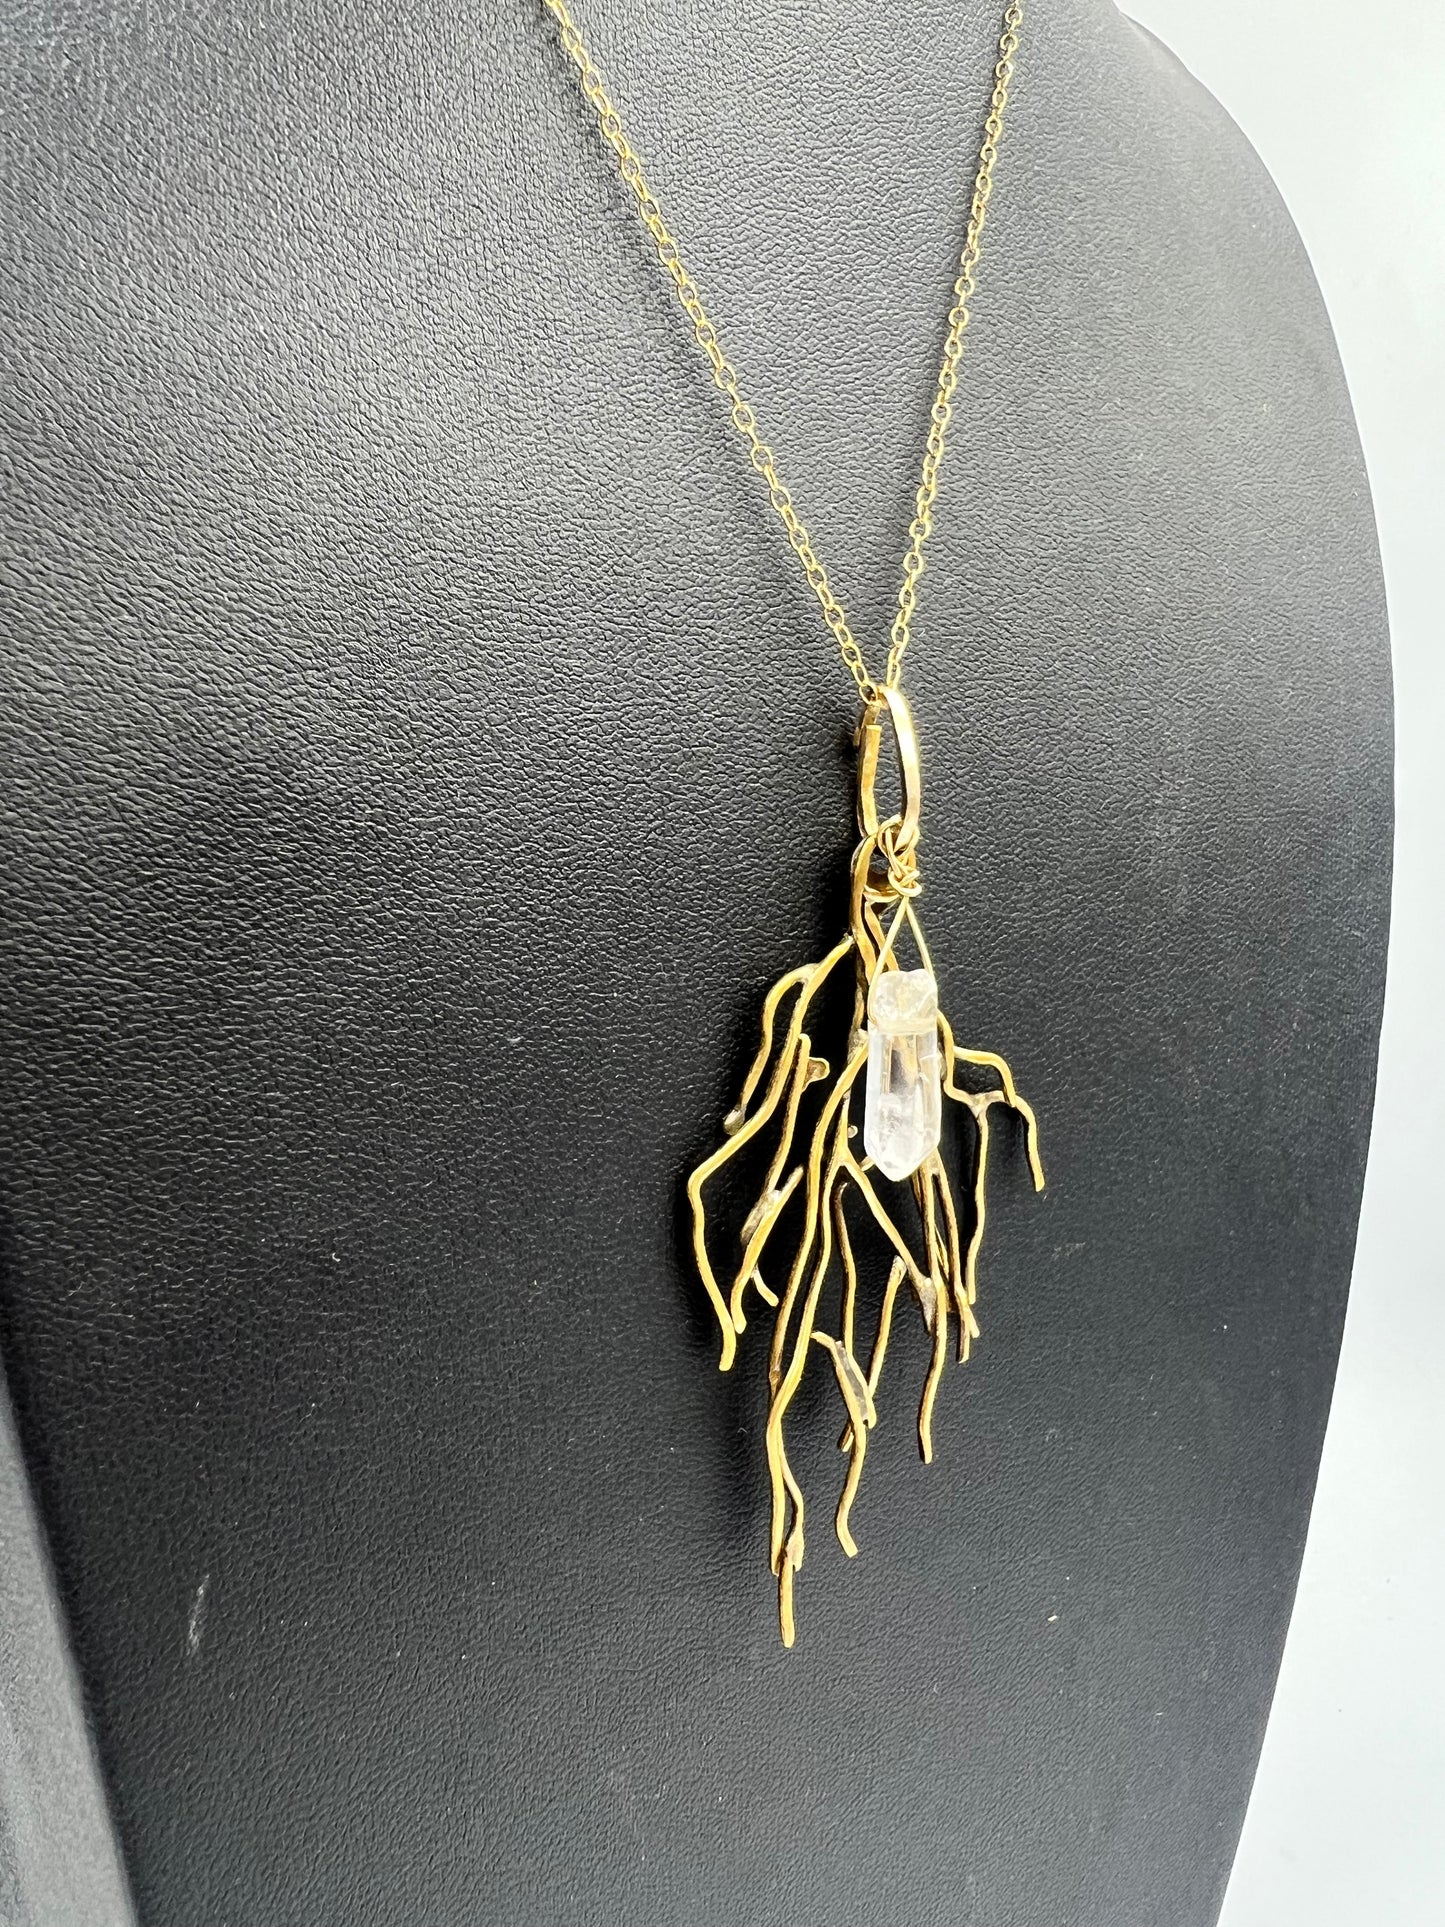 Sparkle Motion: Branches Necklace with Quartz